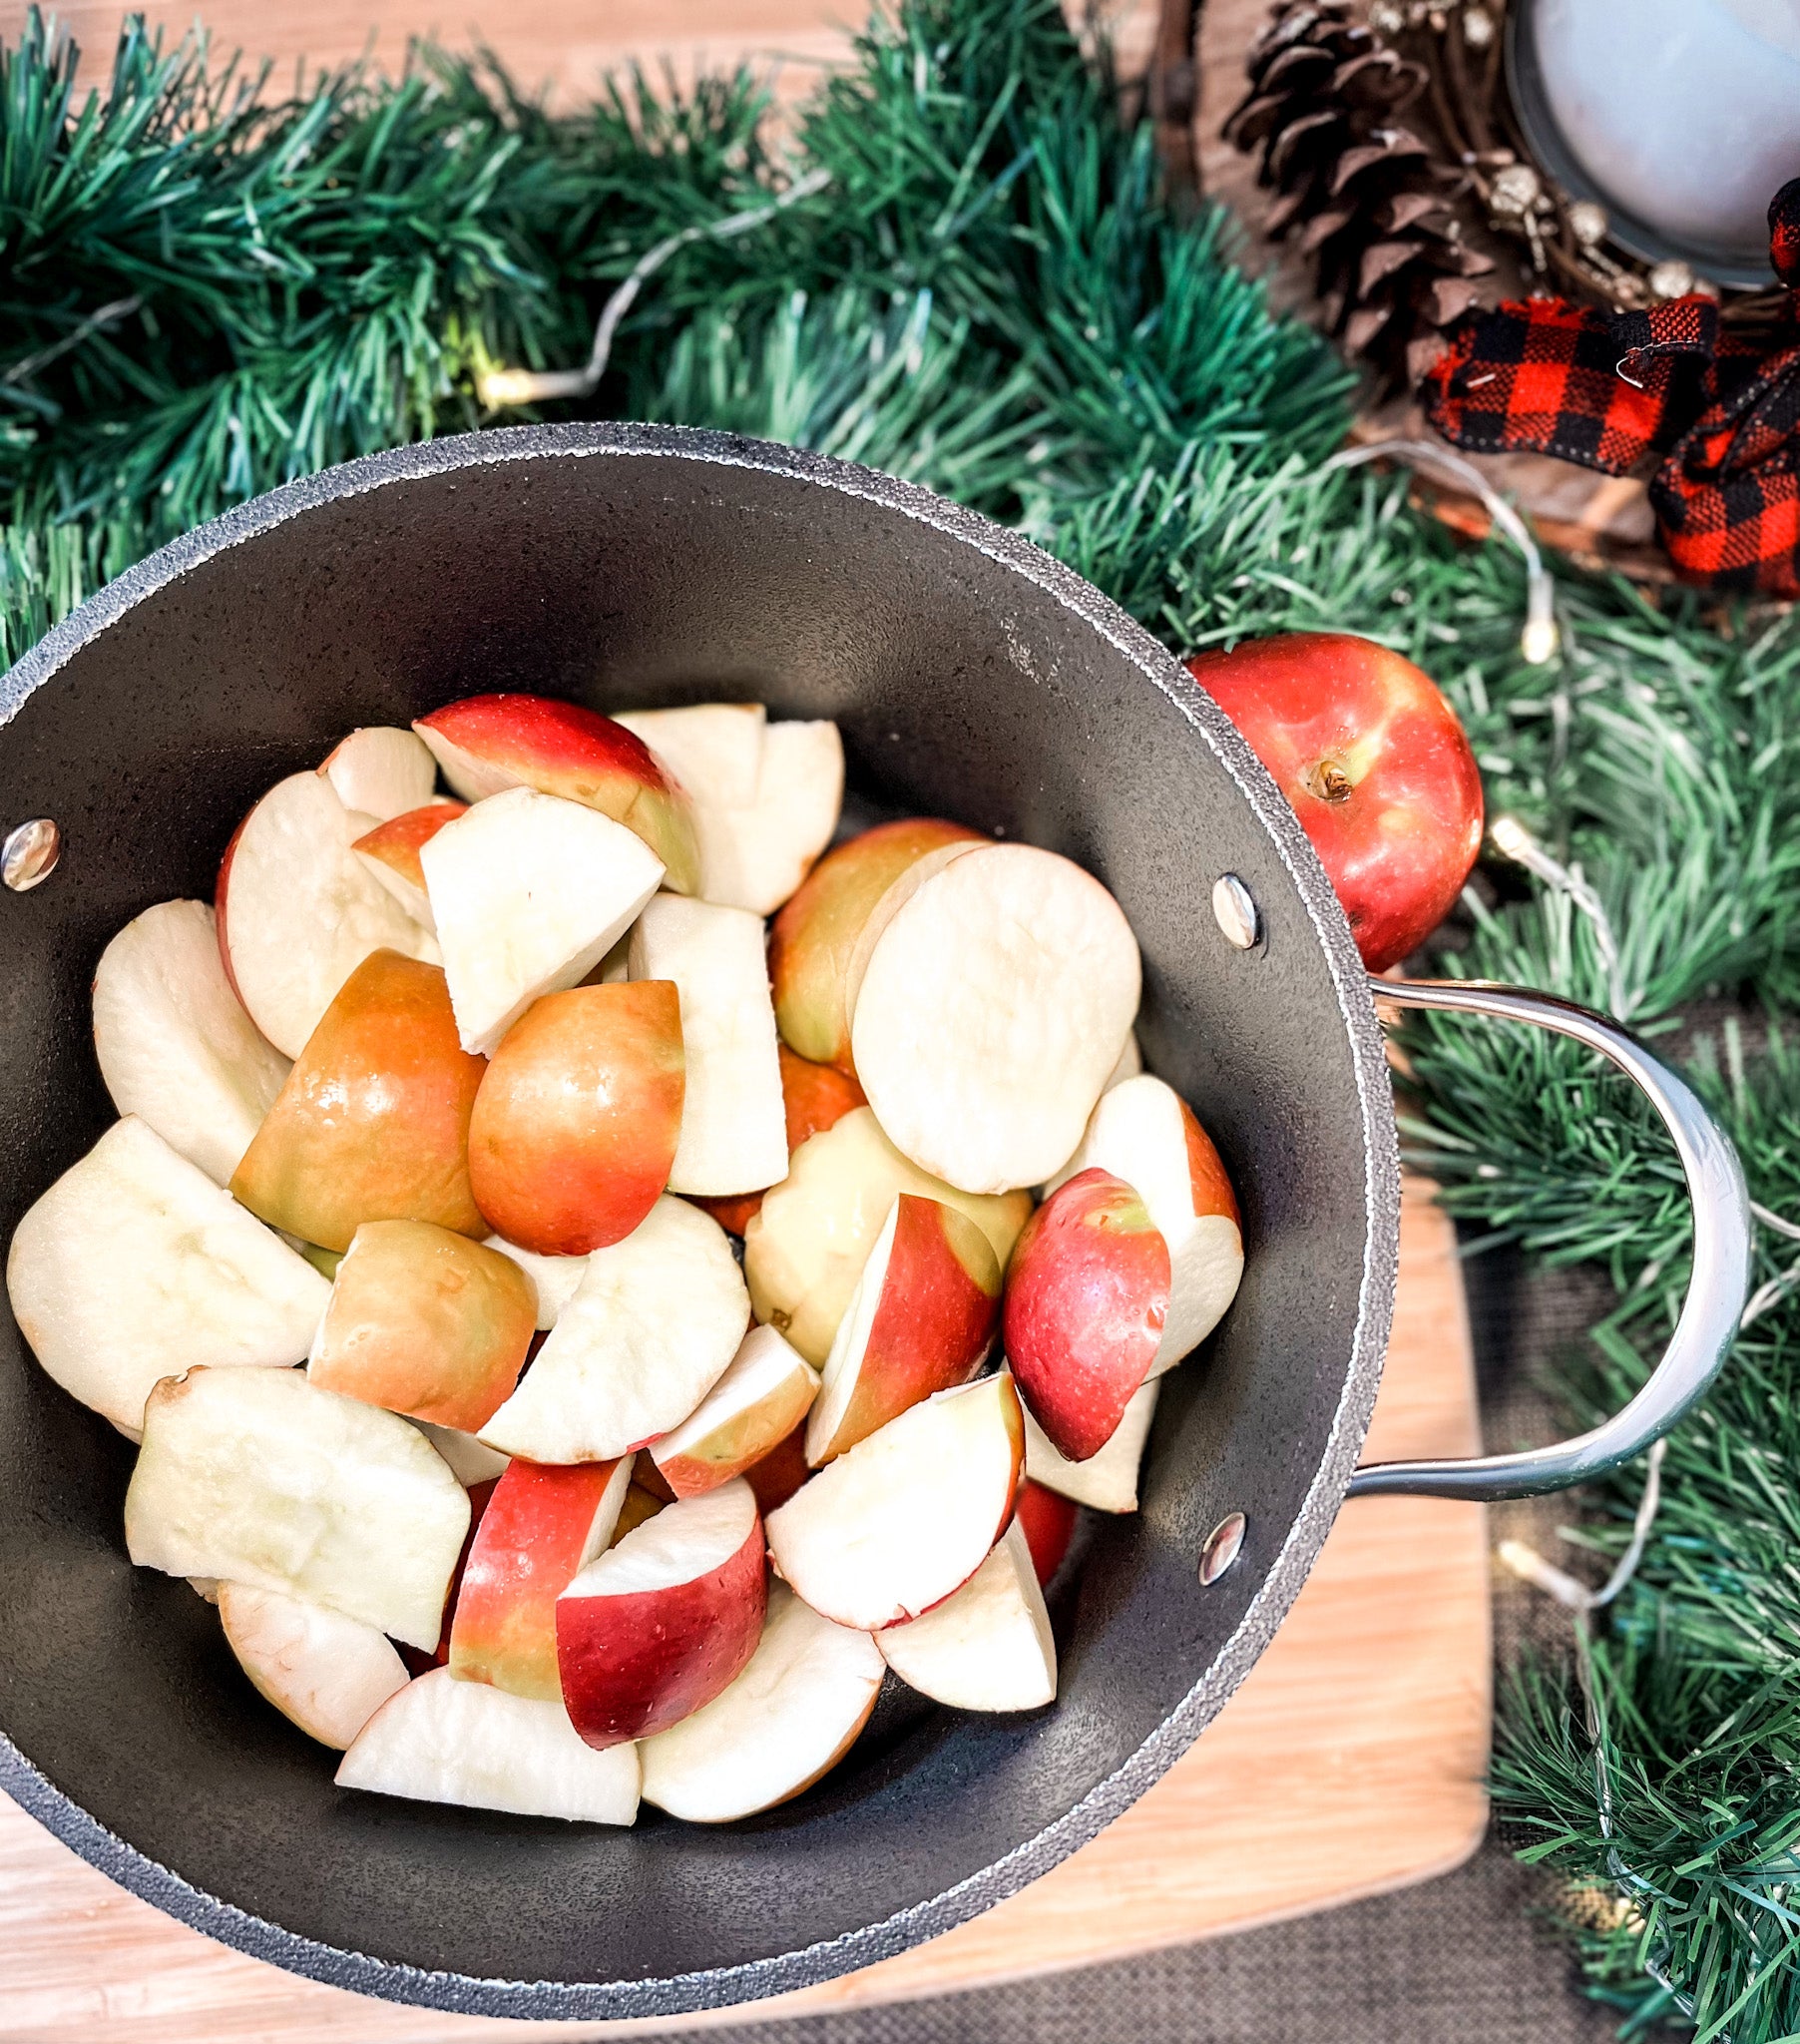 Pochettes de compote de pommes et petits fruits - 5 ingredients 15